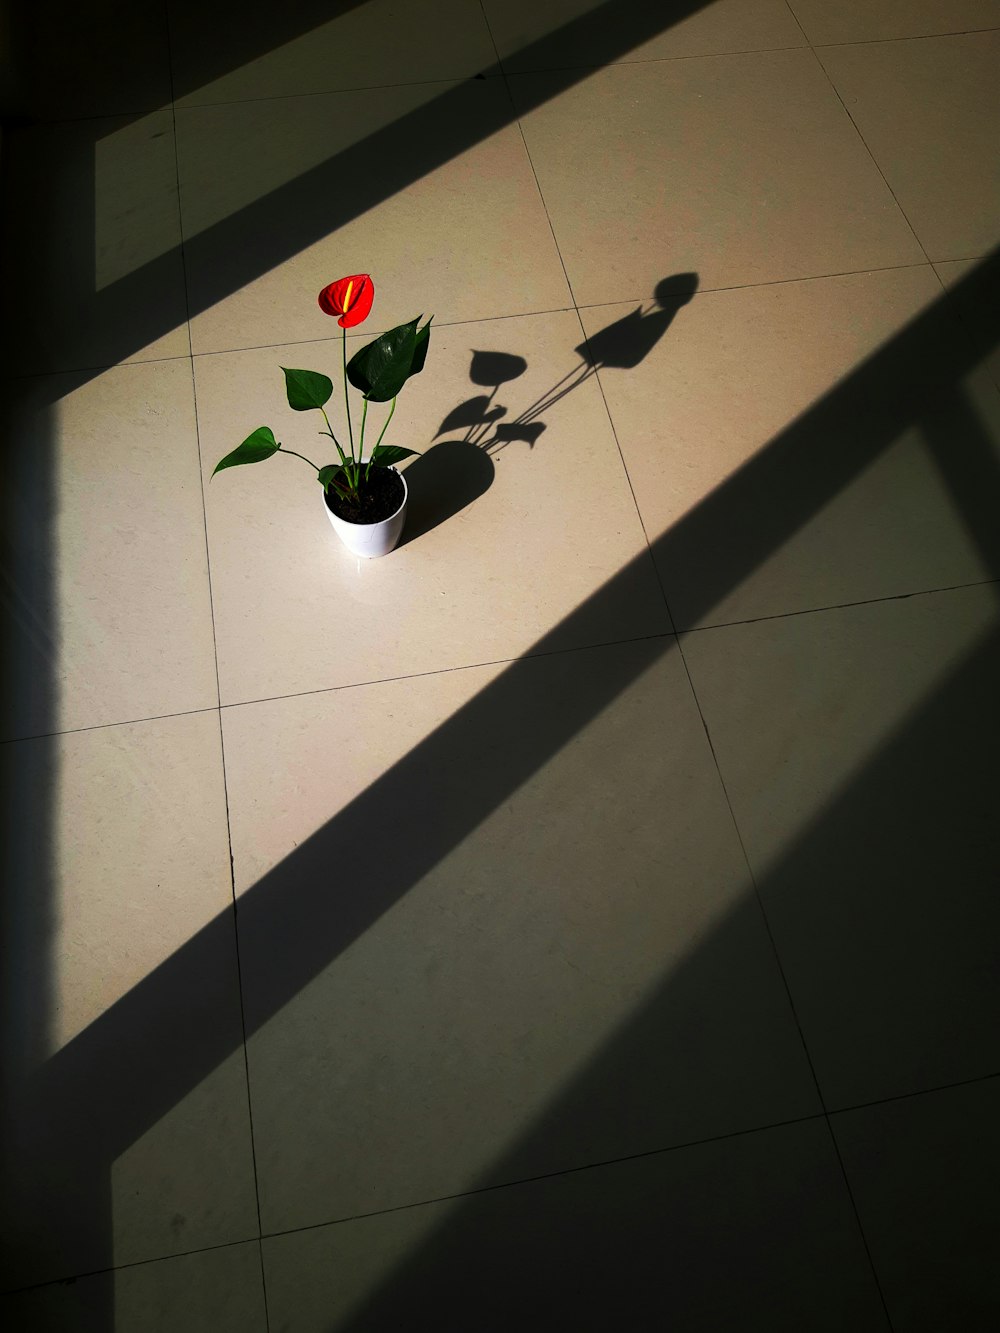 red rose in white ceramic pot on white tiled floor